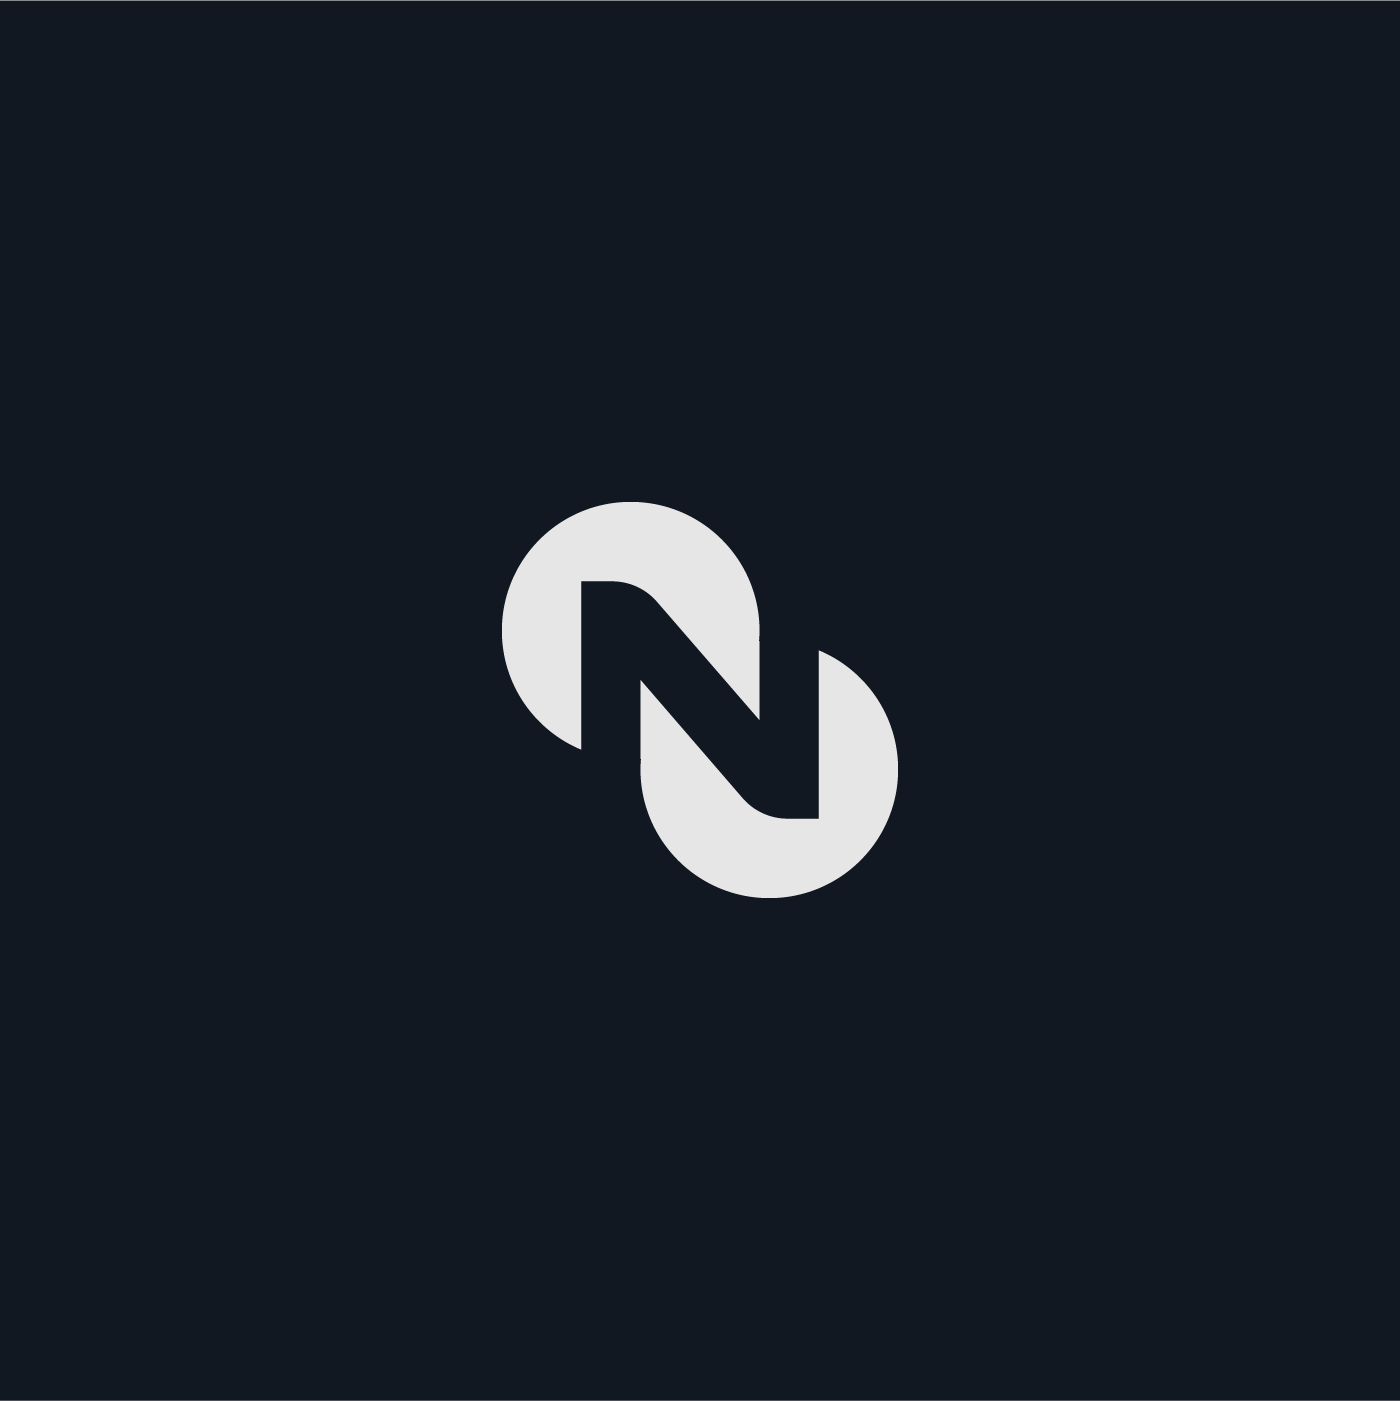 N Letter Mark Logo Concept